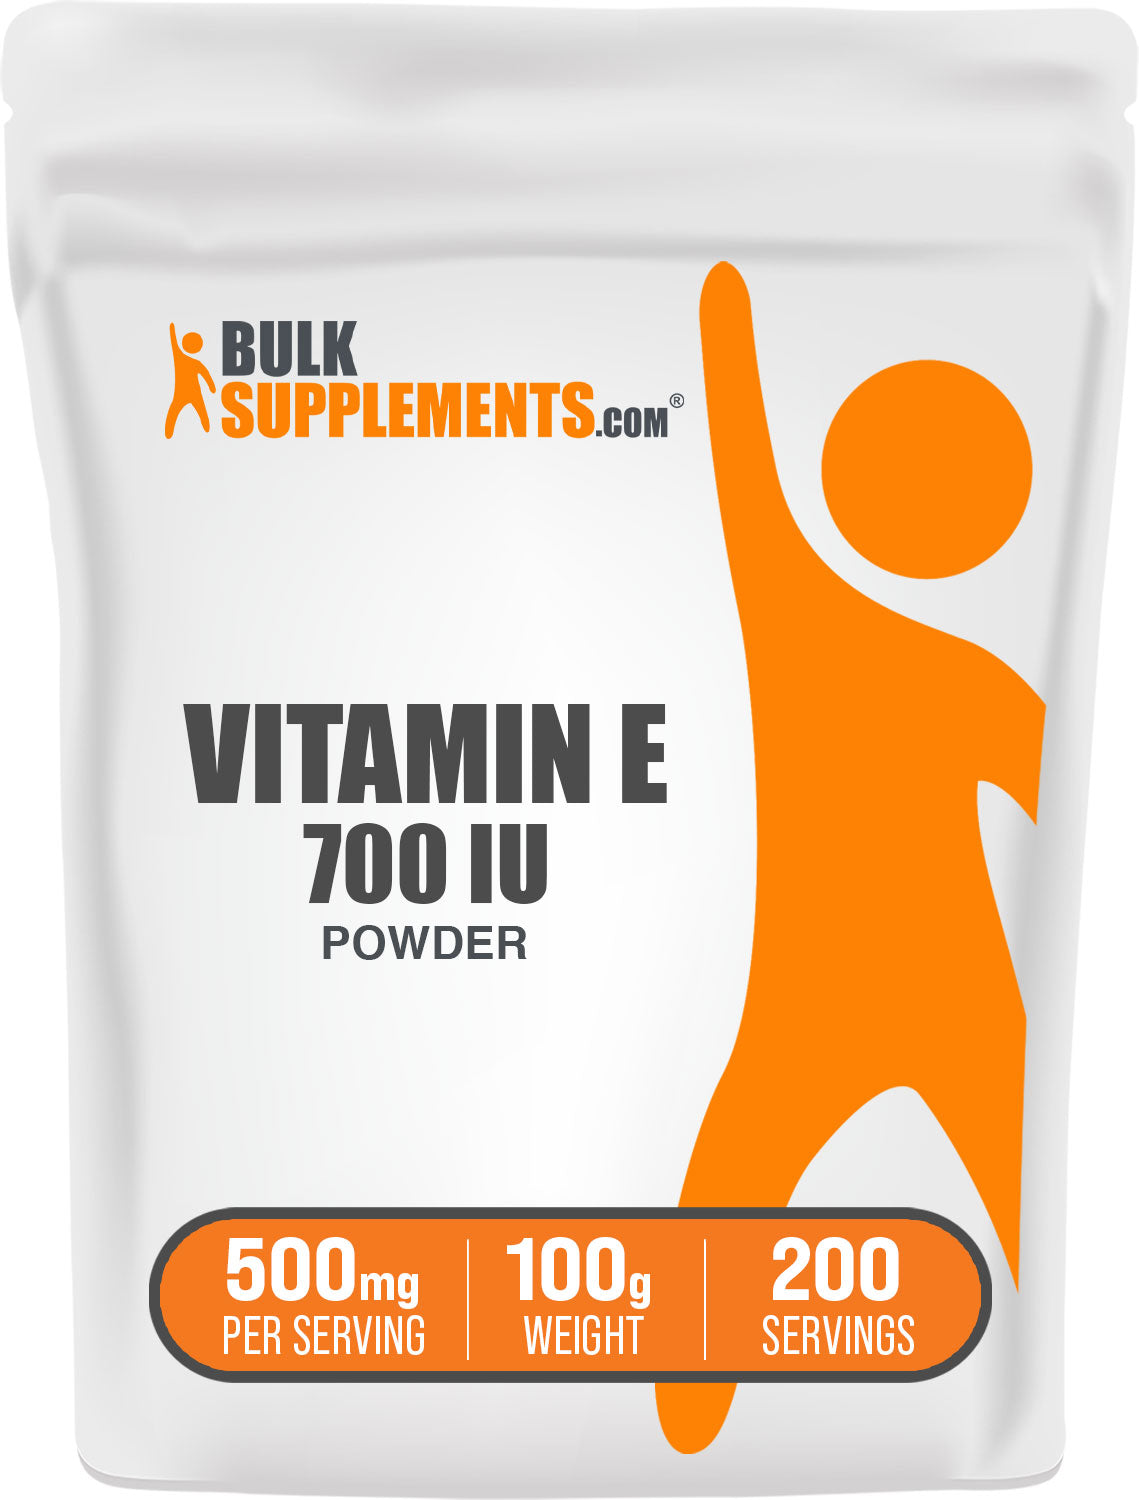 BulkSupplements.com Vitamin E 700 IU Powder 100g bag